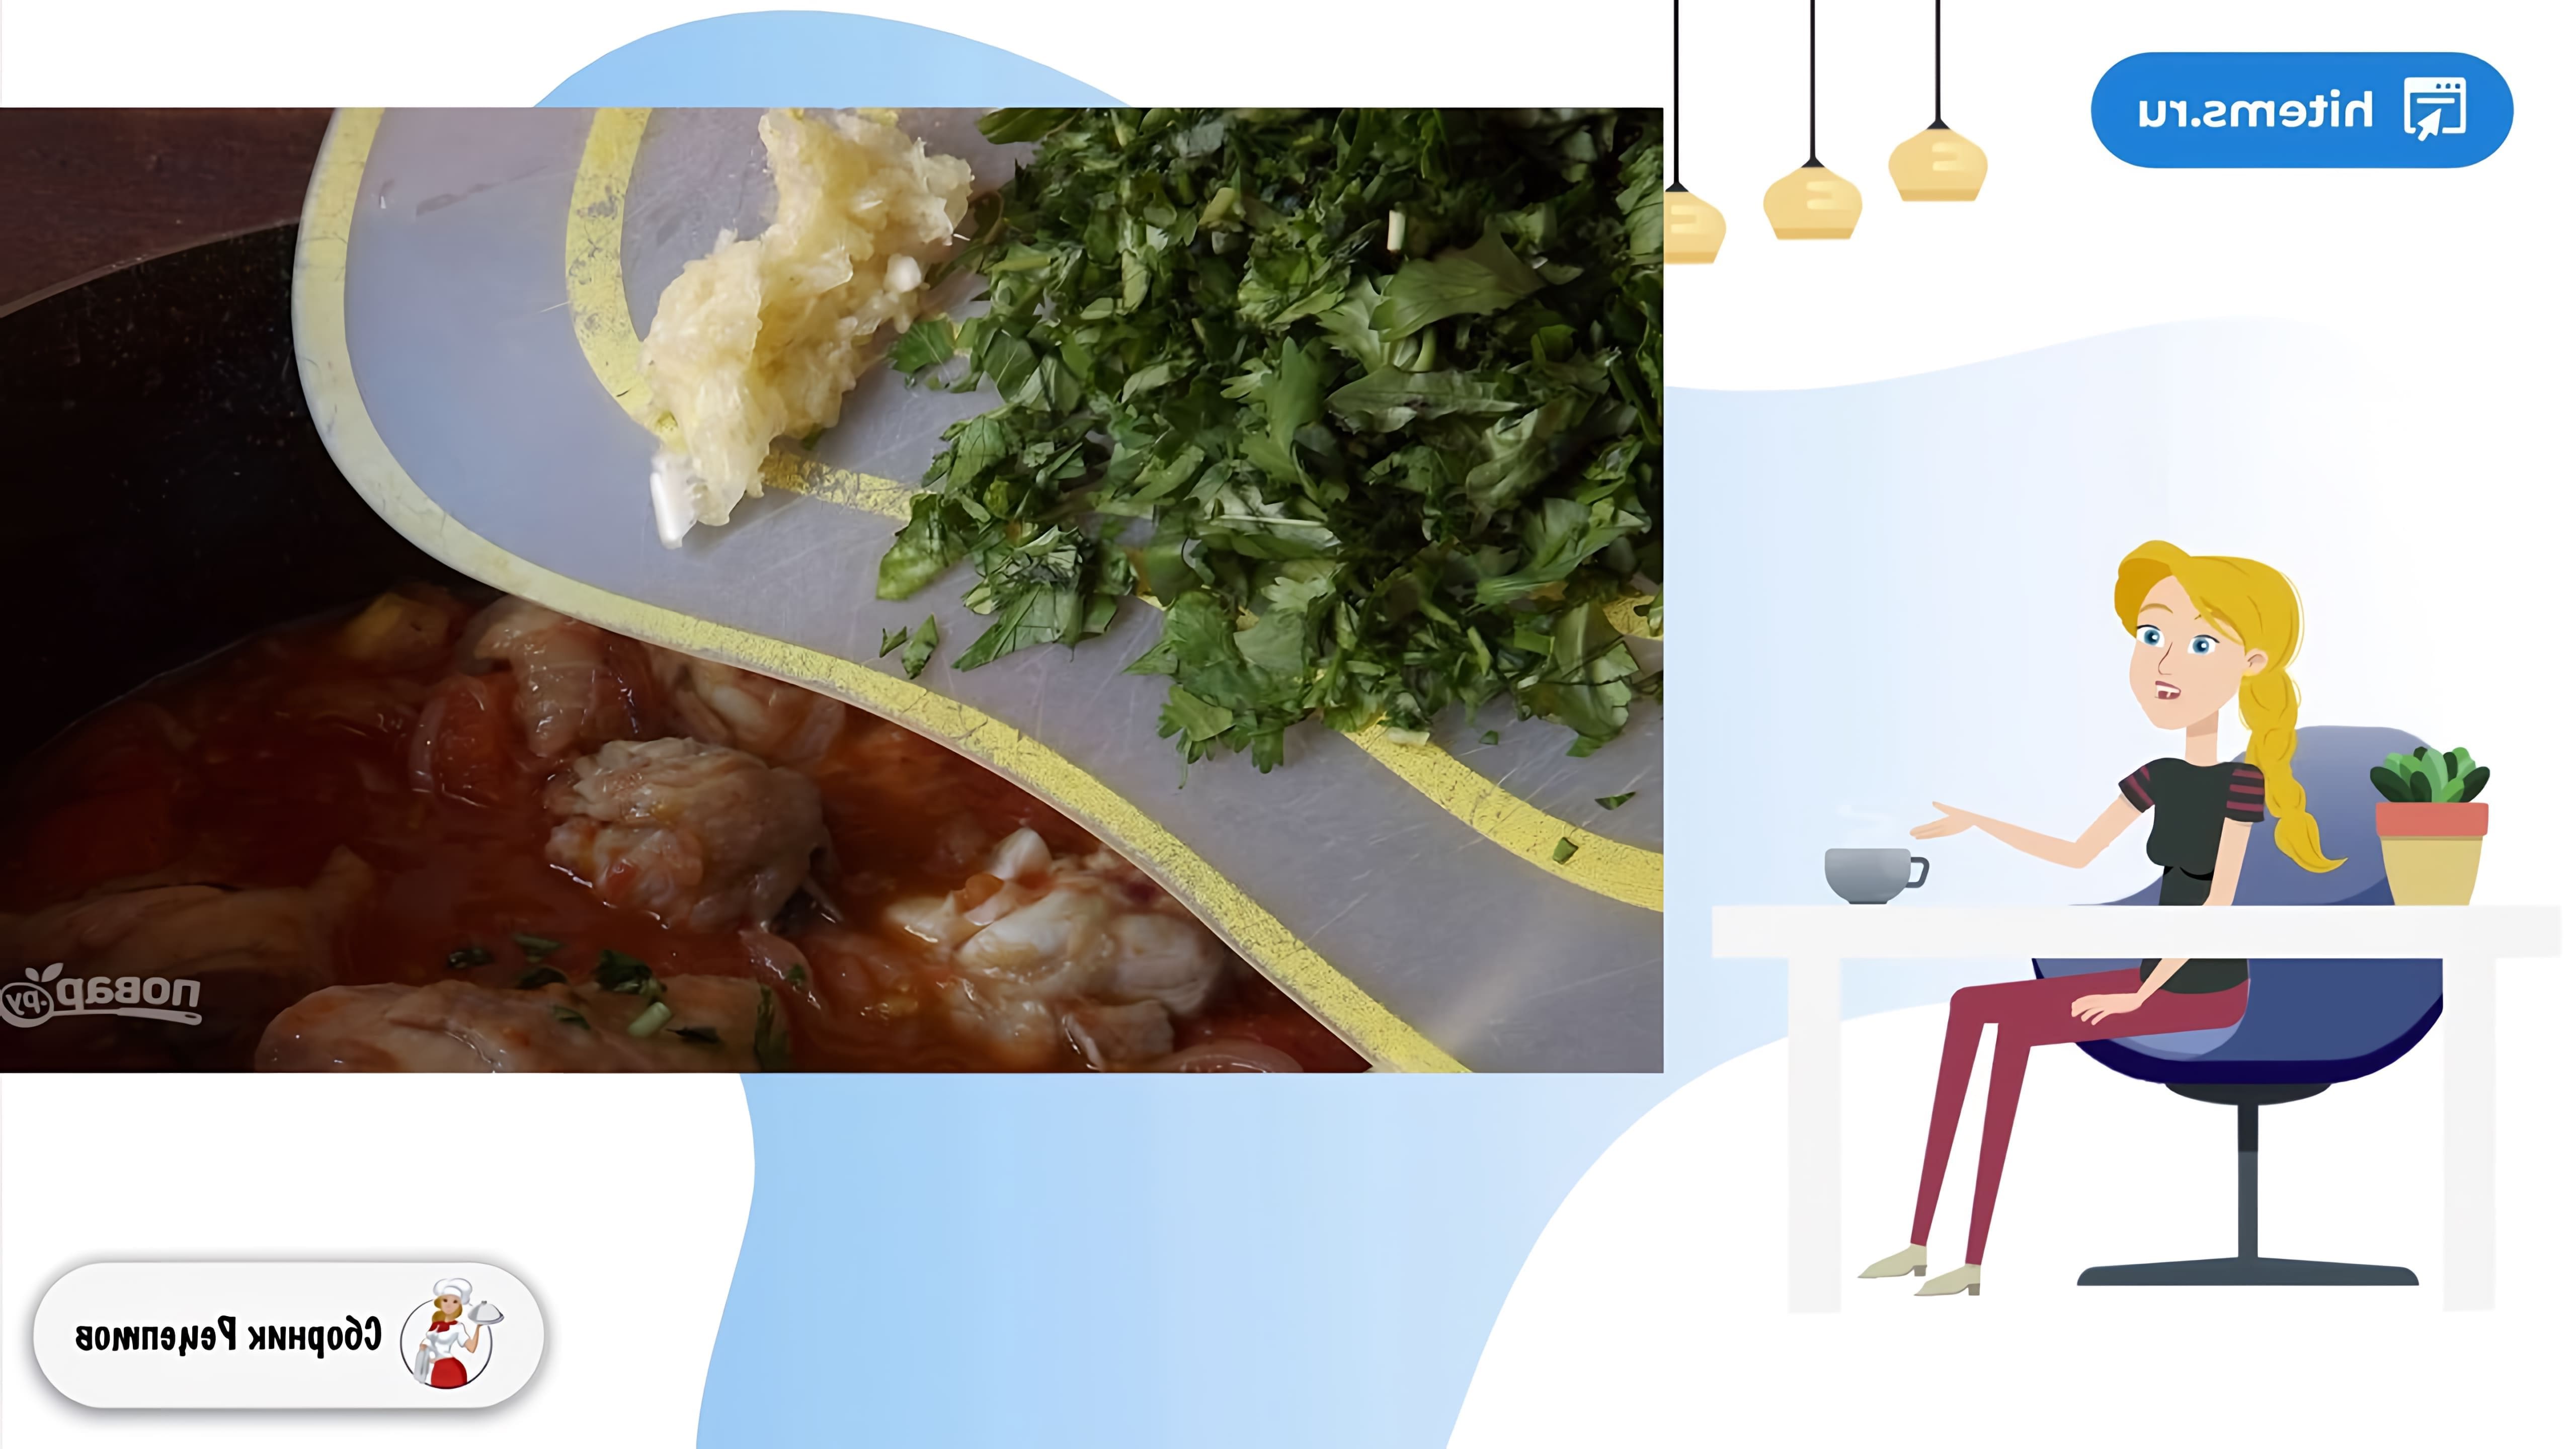 В этом видео демонстрируется рецепт приготовления чахохбили из куриных окорочков